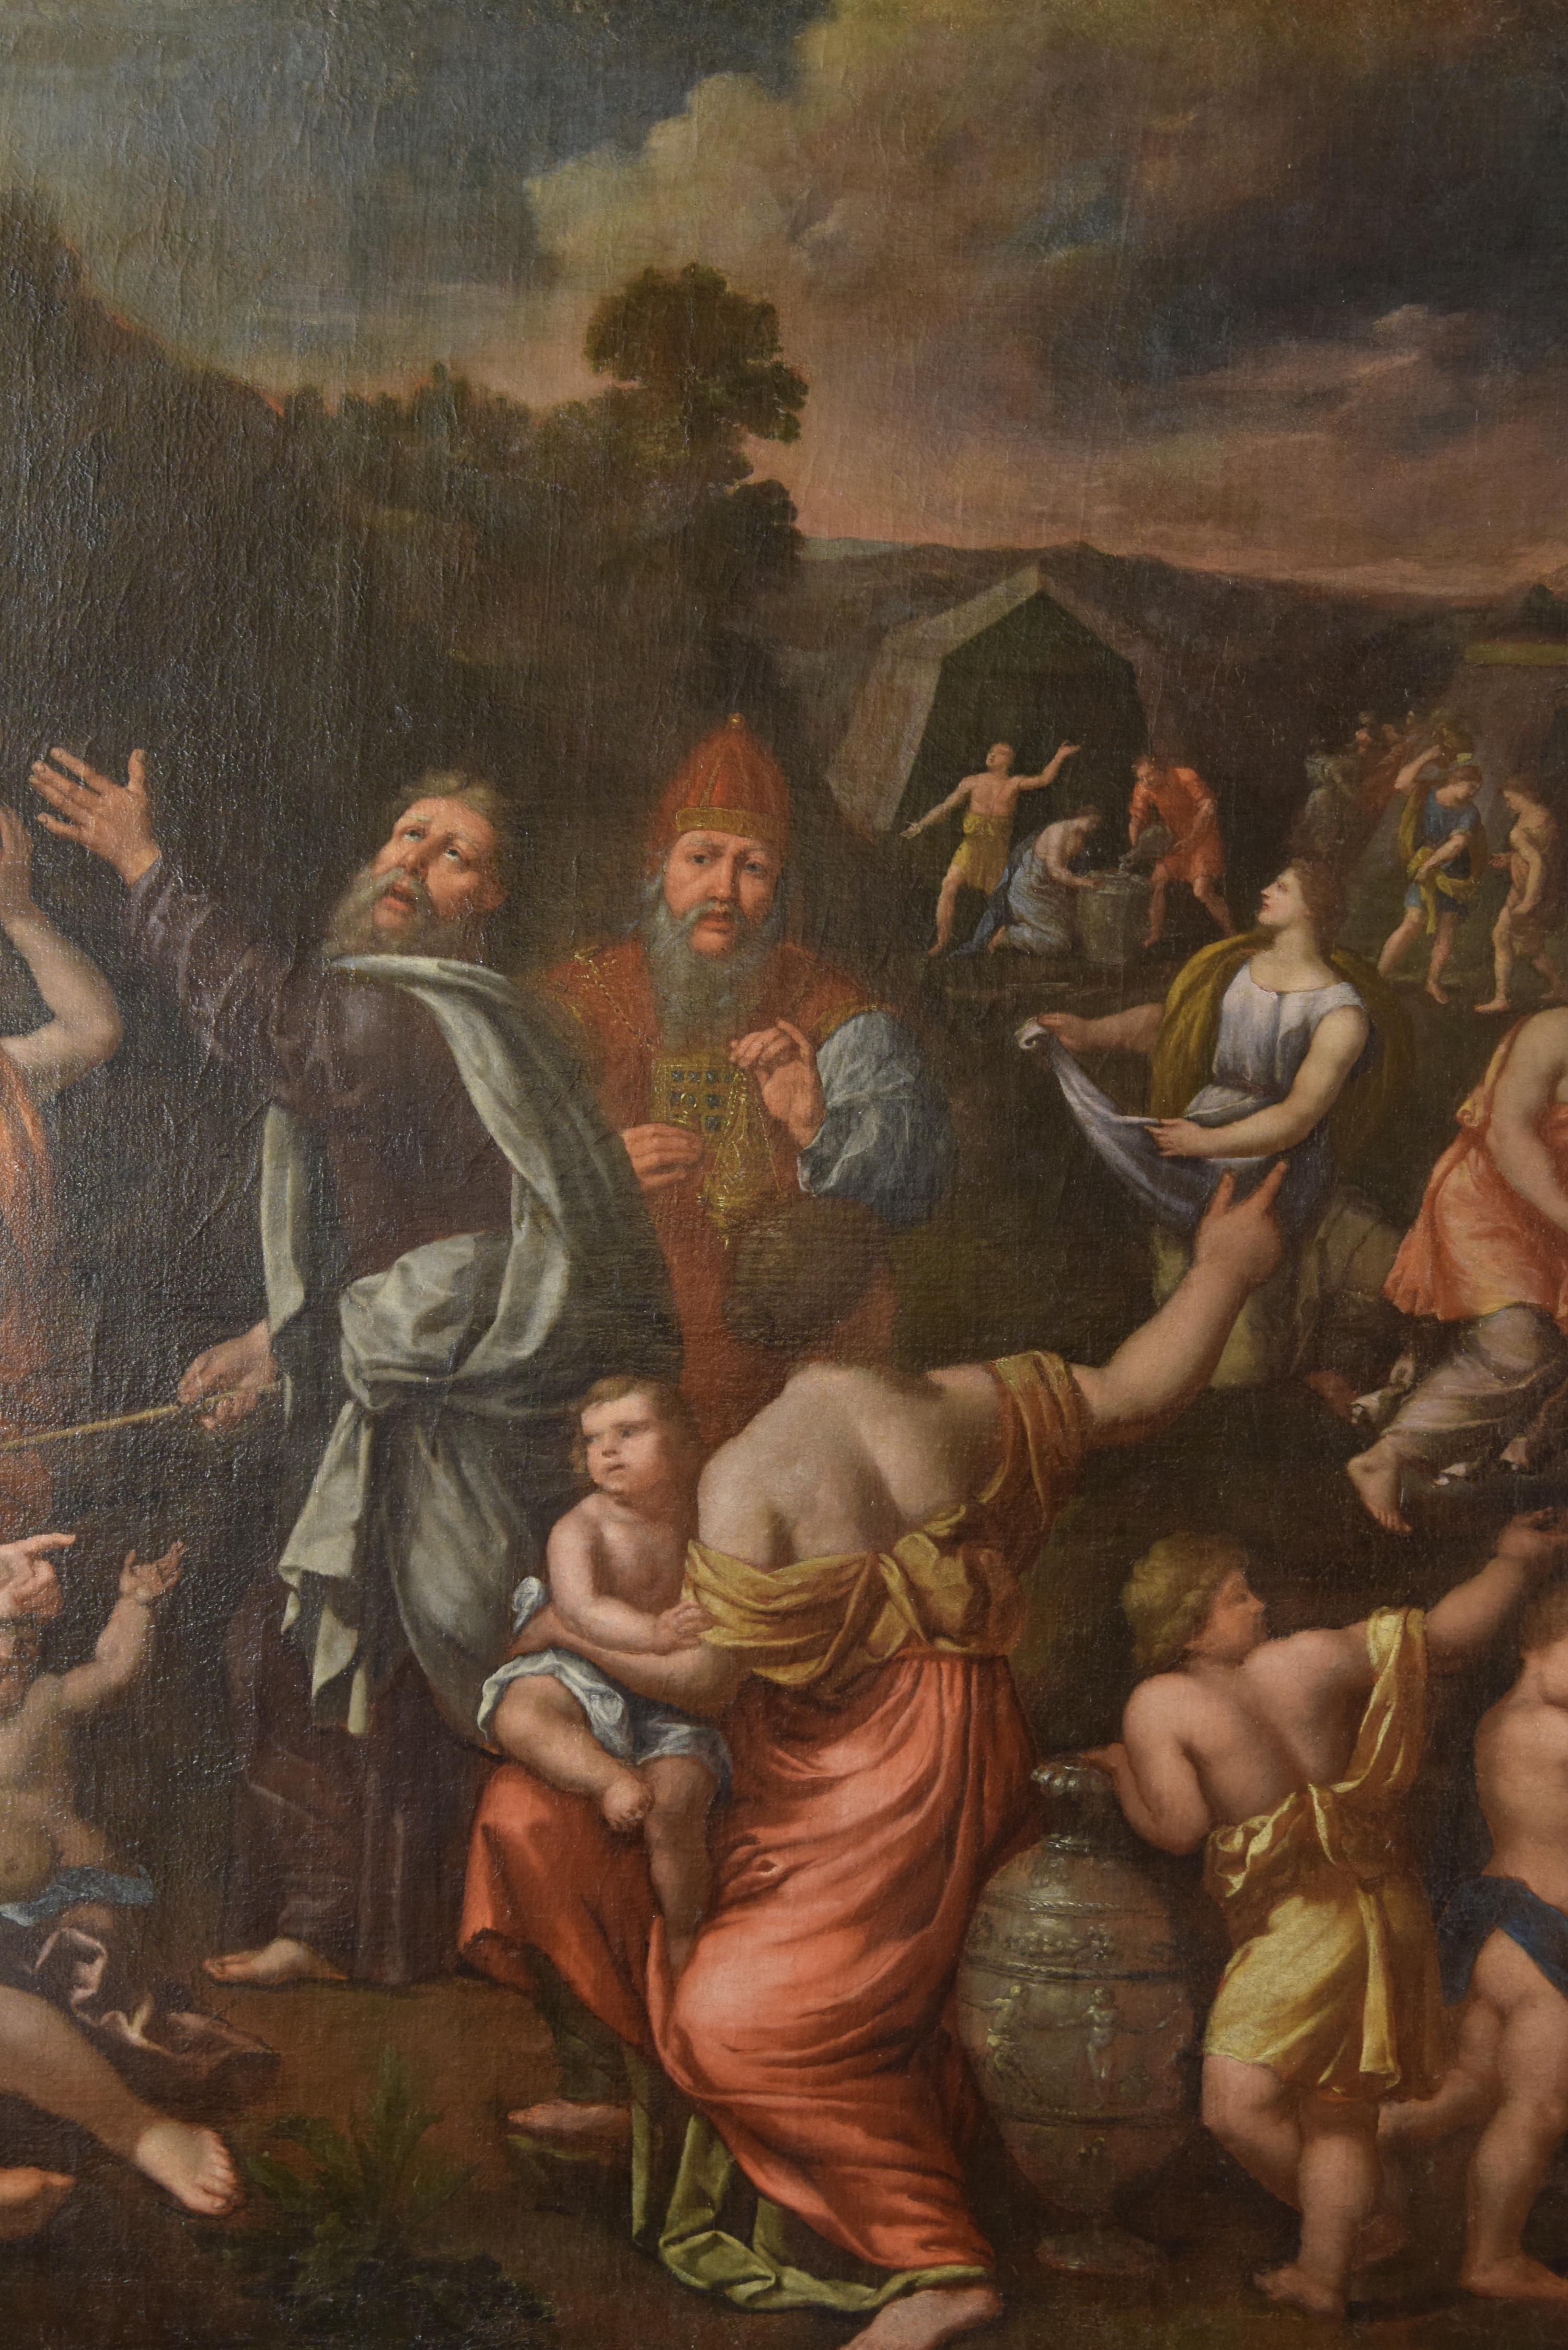 Les Juifs dans le désert collectant la Manne. Huile sur toile, XVIIe siècle.
Huile sur toile disposée horizontalement dans laquelle un thème figuratif est représenté avec un paysage montagneux en arrière-plan. Au premier plan, une série de